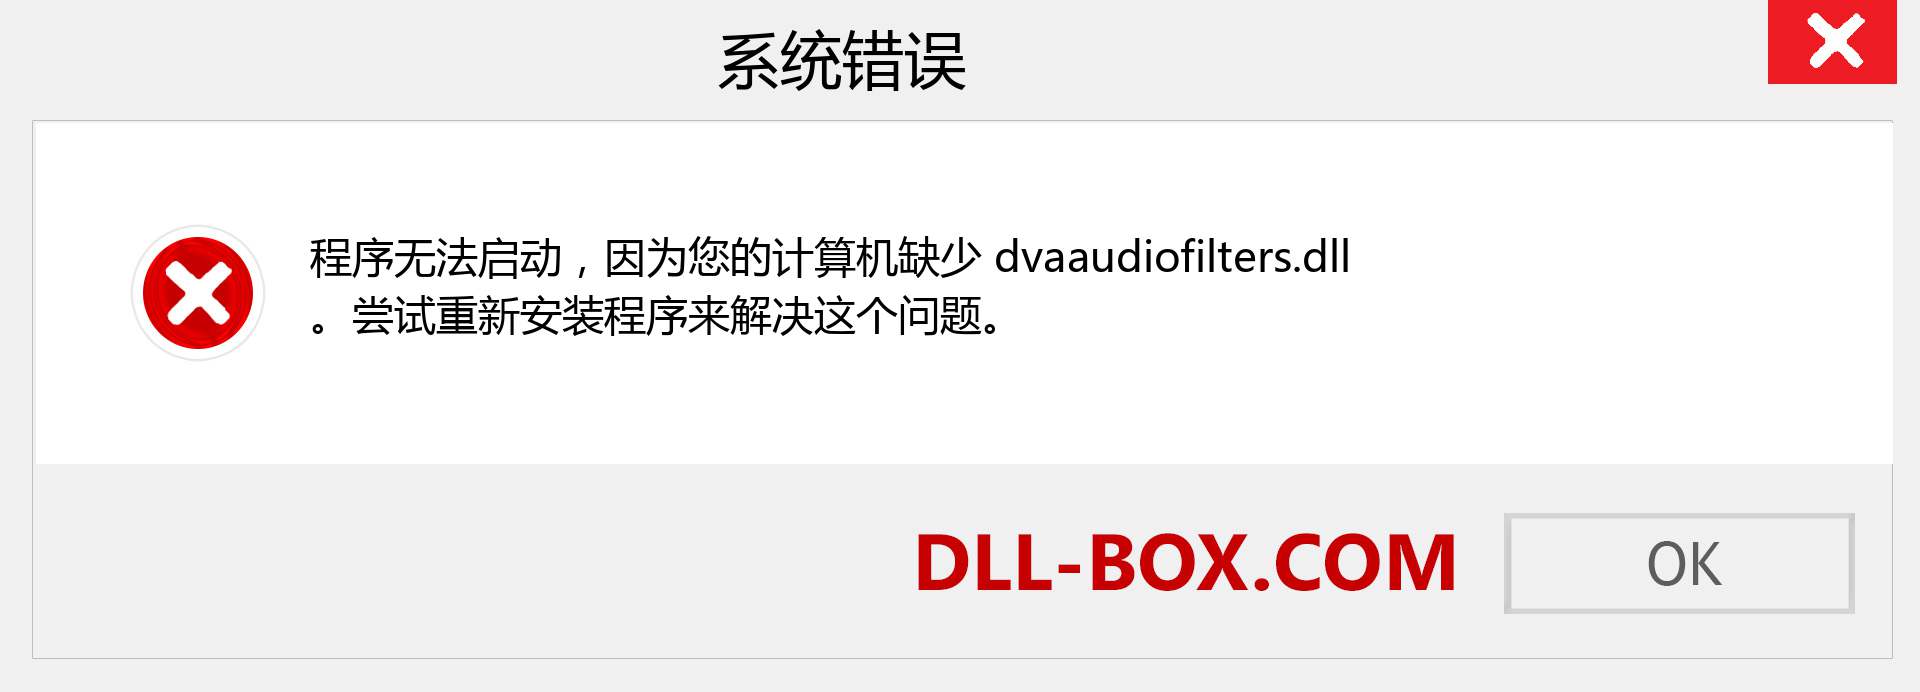 dvaaudiofilters.dll 文件丢失？。 适用于 Windows 7、8、10 的下载 - 修复 Windows、照片、图像上的 dvaaudiofilters dll 丢失错误